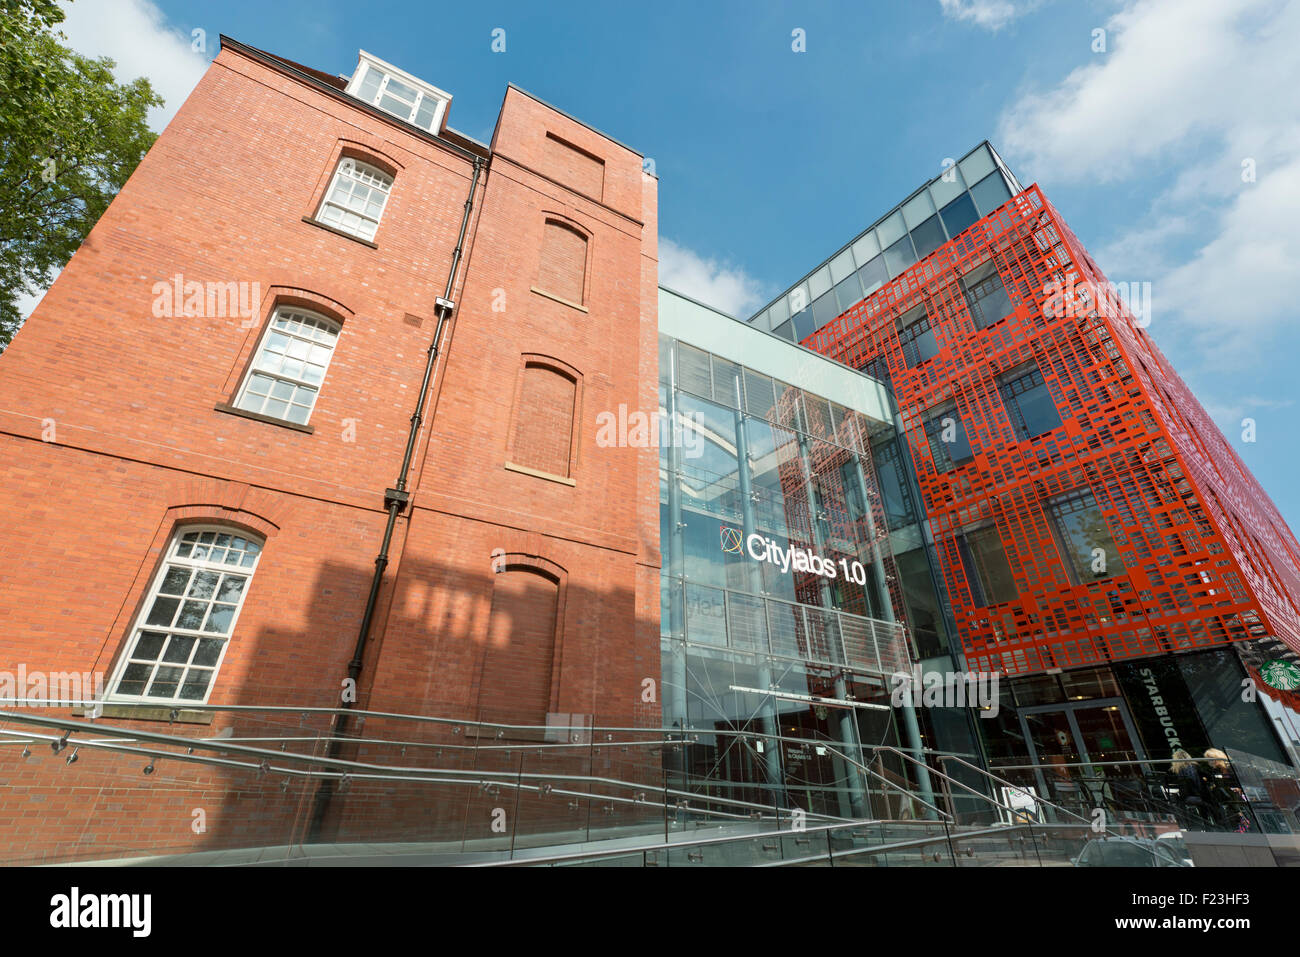 Les Citylabs centre biomédical d'excellence de l'immeuble situé à proximité de la NHS Manchester Royal Infirmary Hospital de Manchester. Banque D'Images